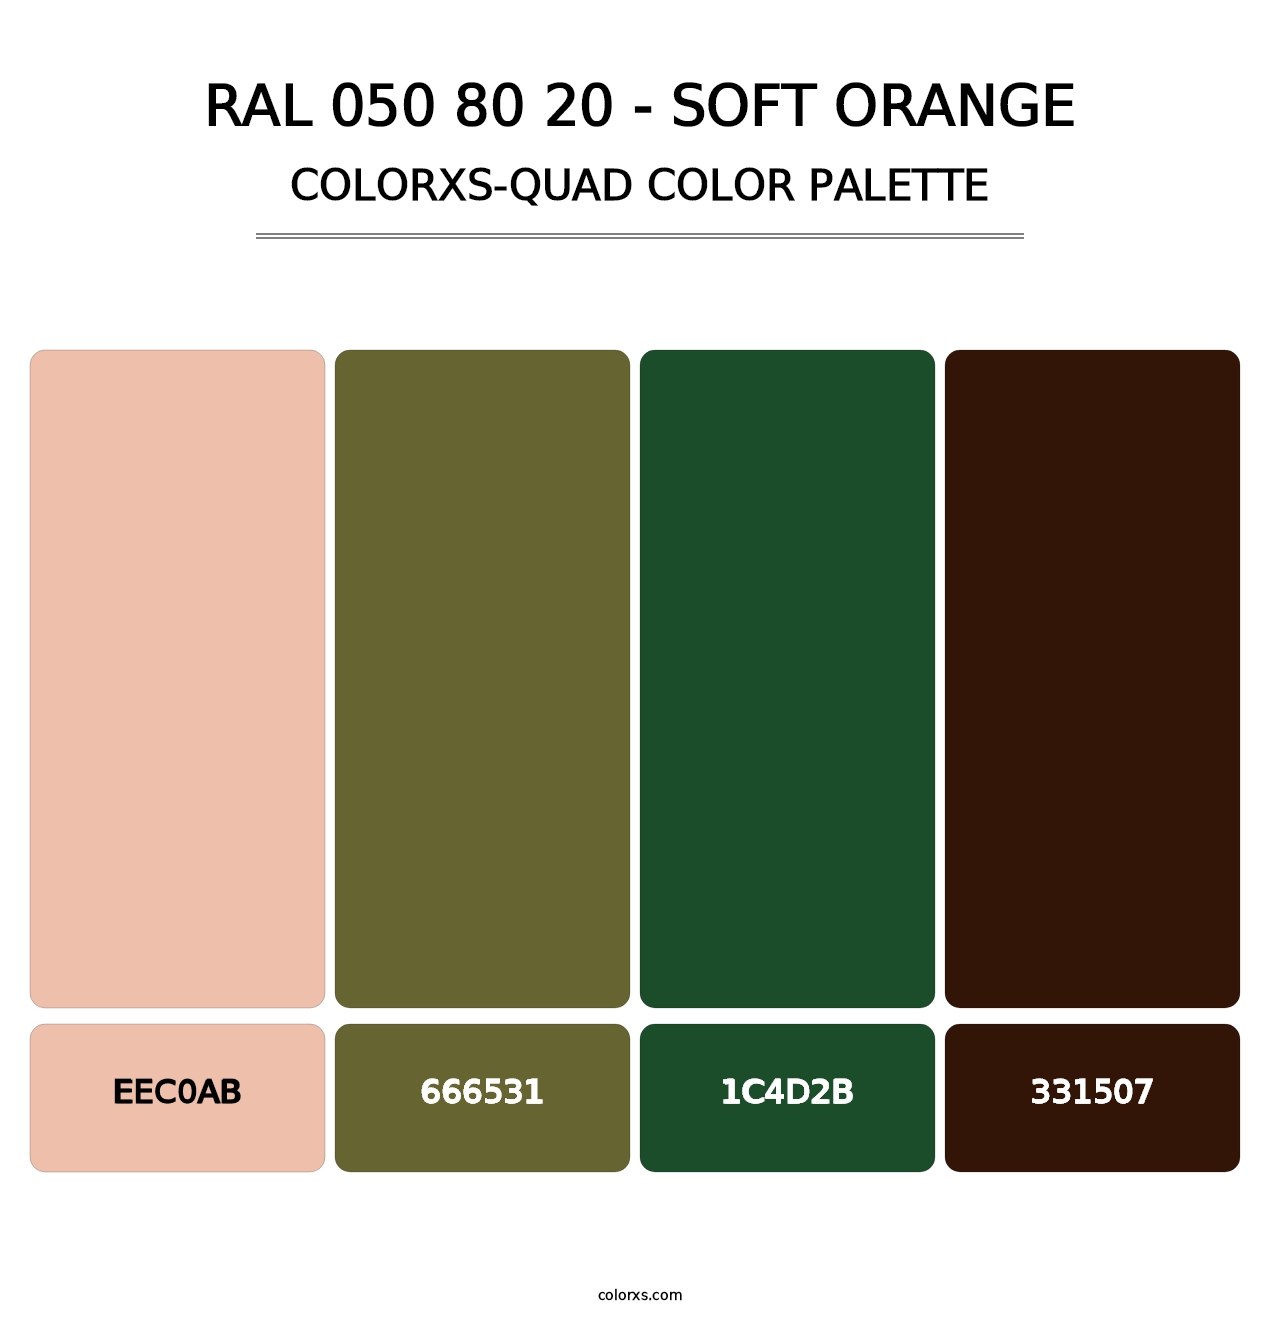 RAL 050 80 20 - Soft Orange - Colorxs Quad Palette